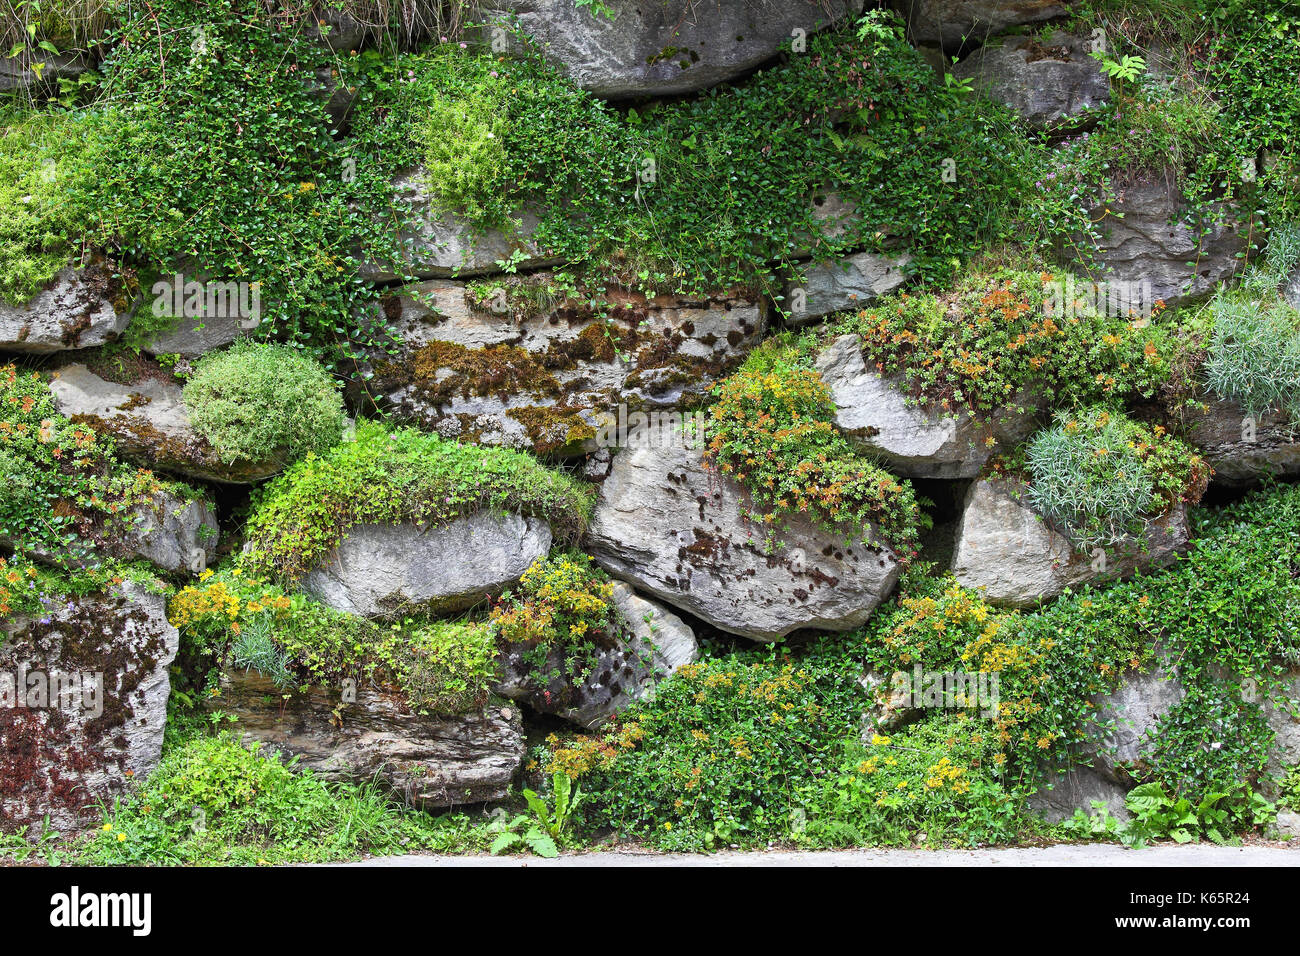 Overgrown dry stone wall, Styria, Austria Stock Photo